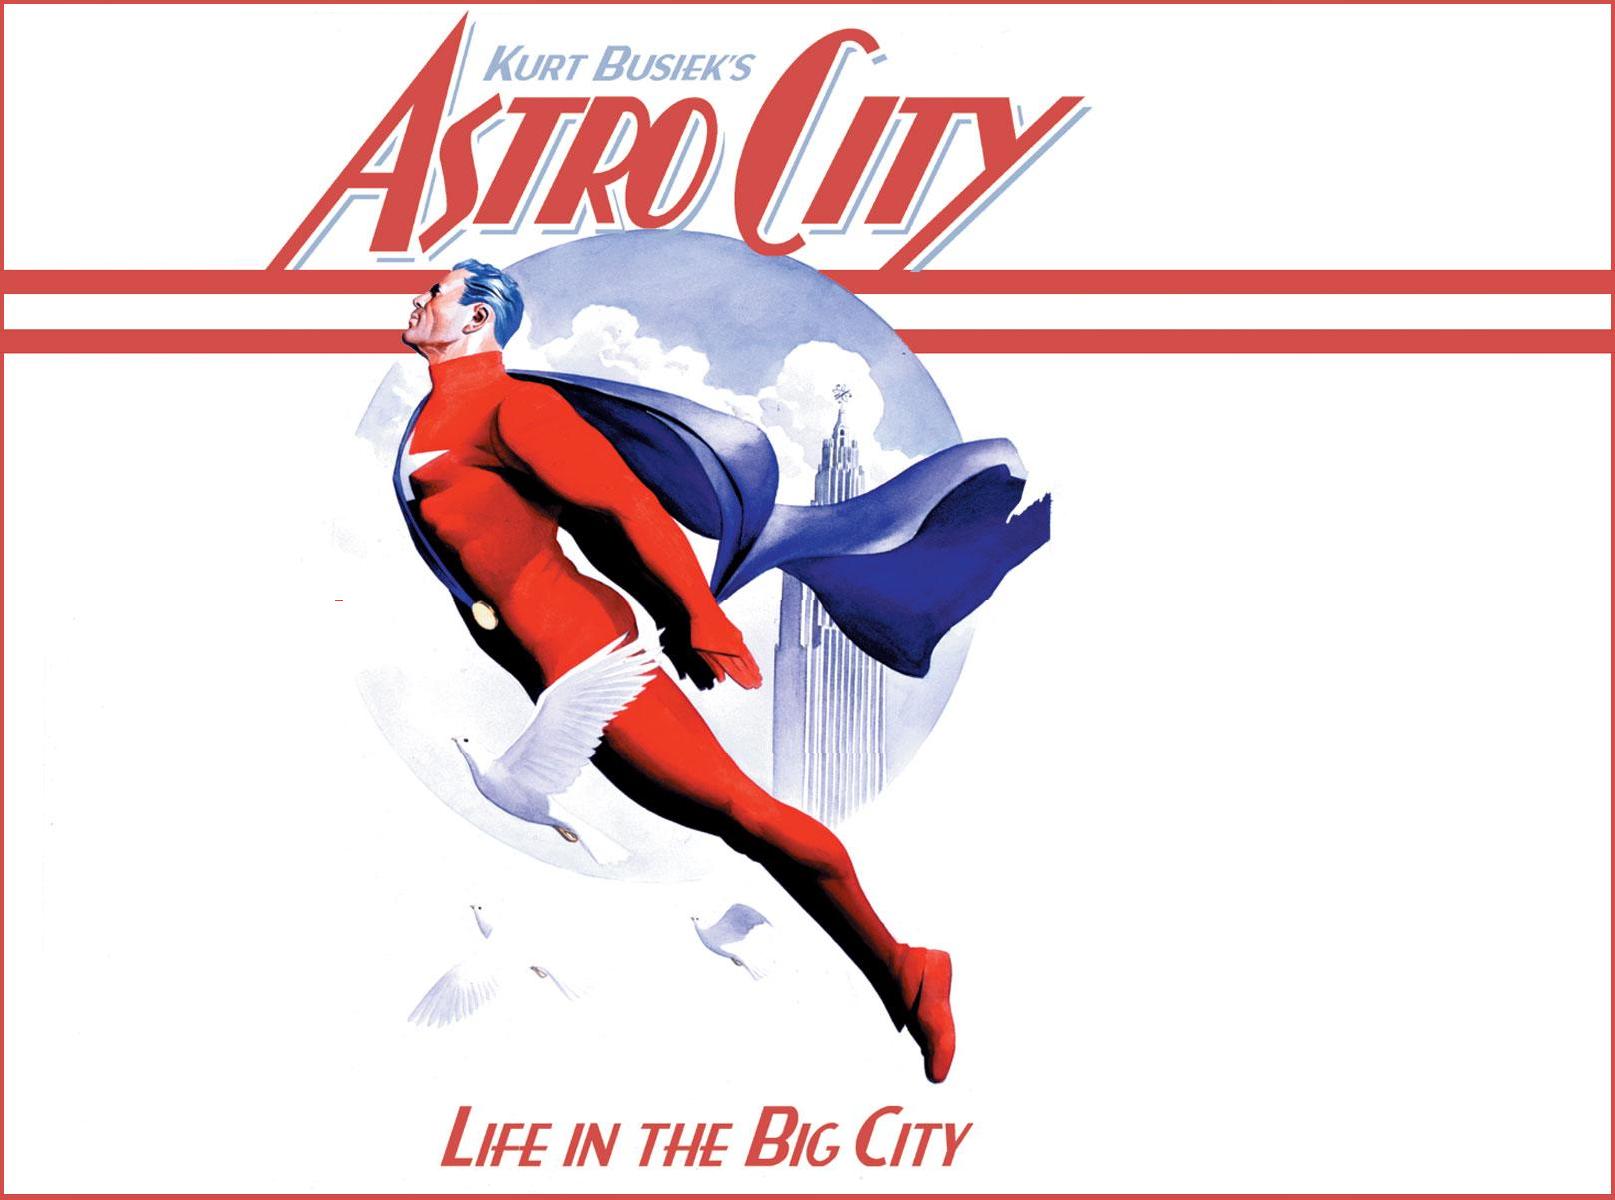 Astro City #20